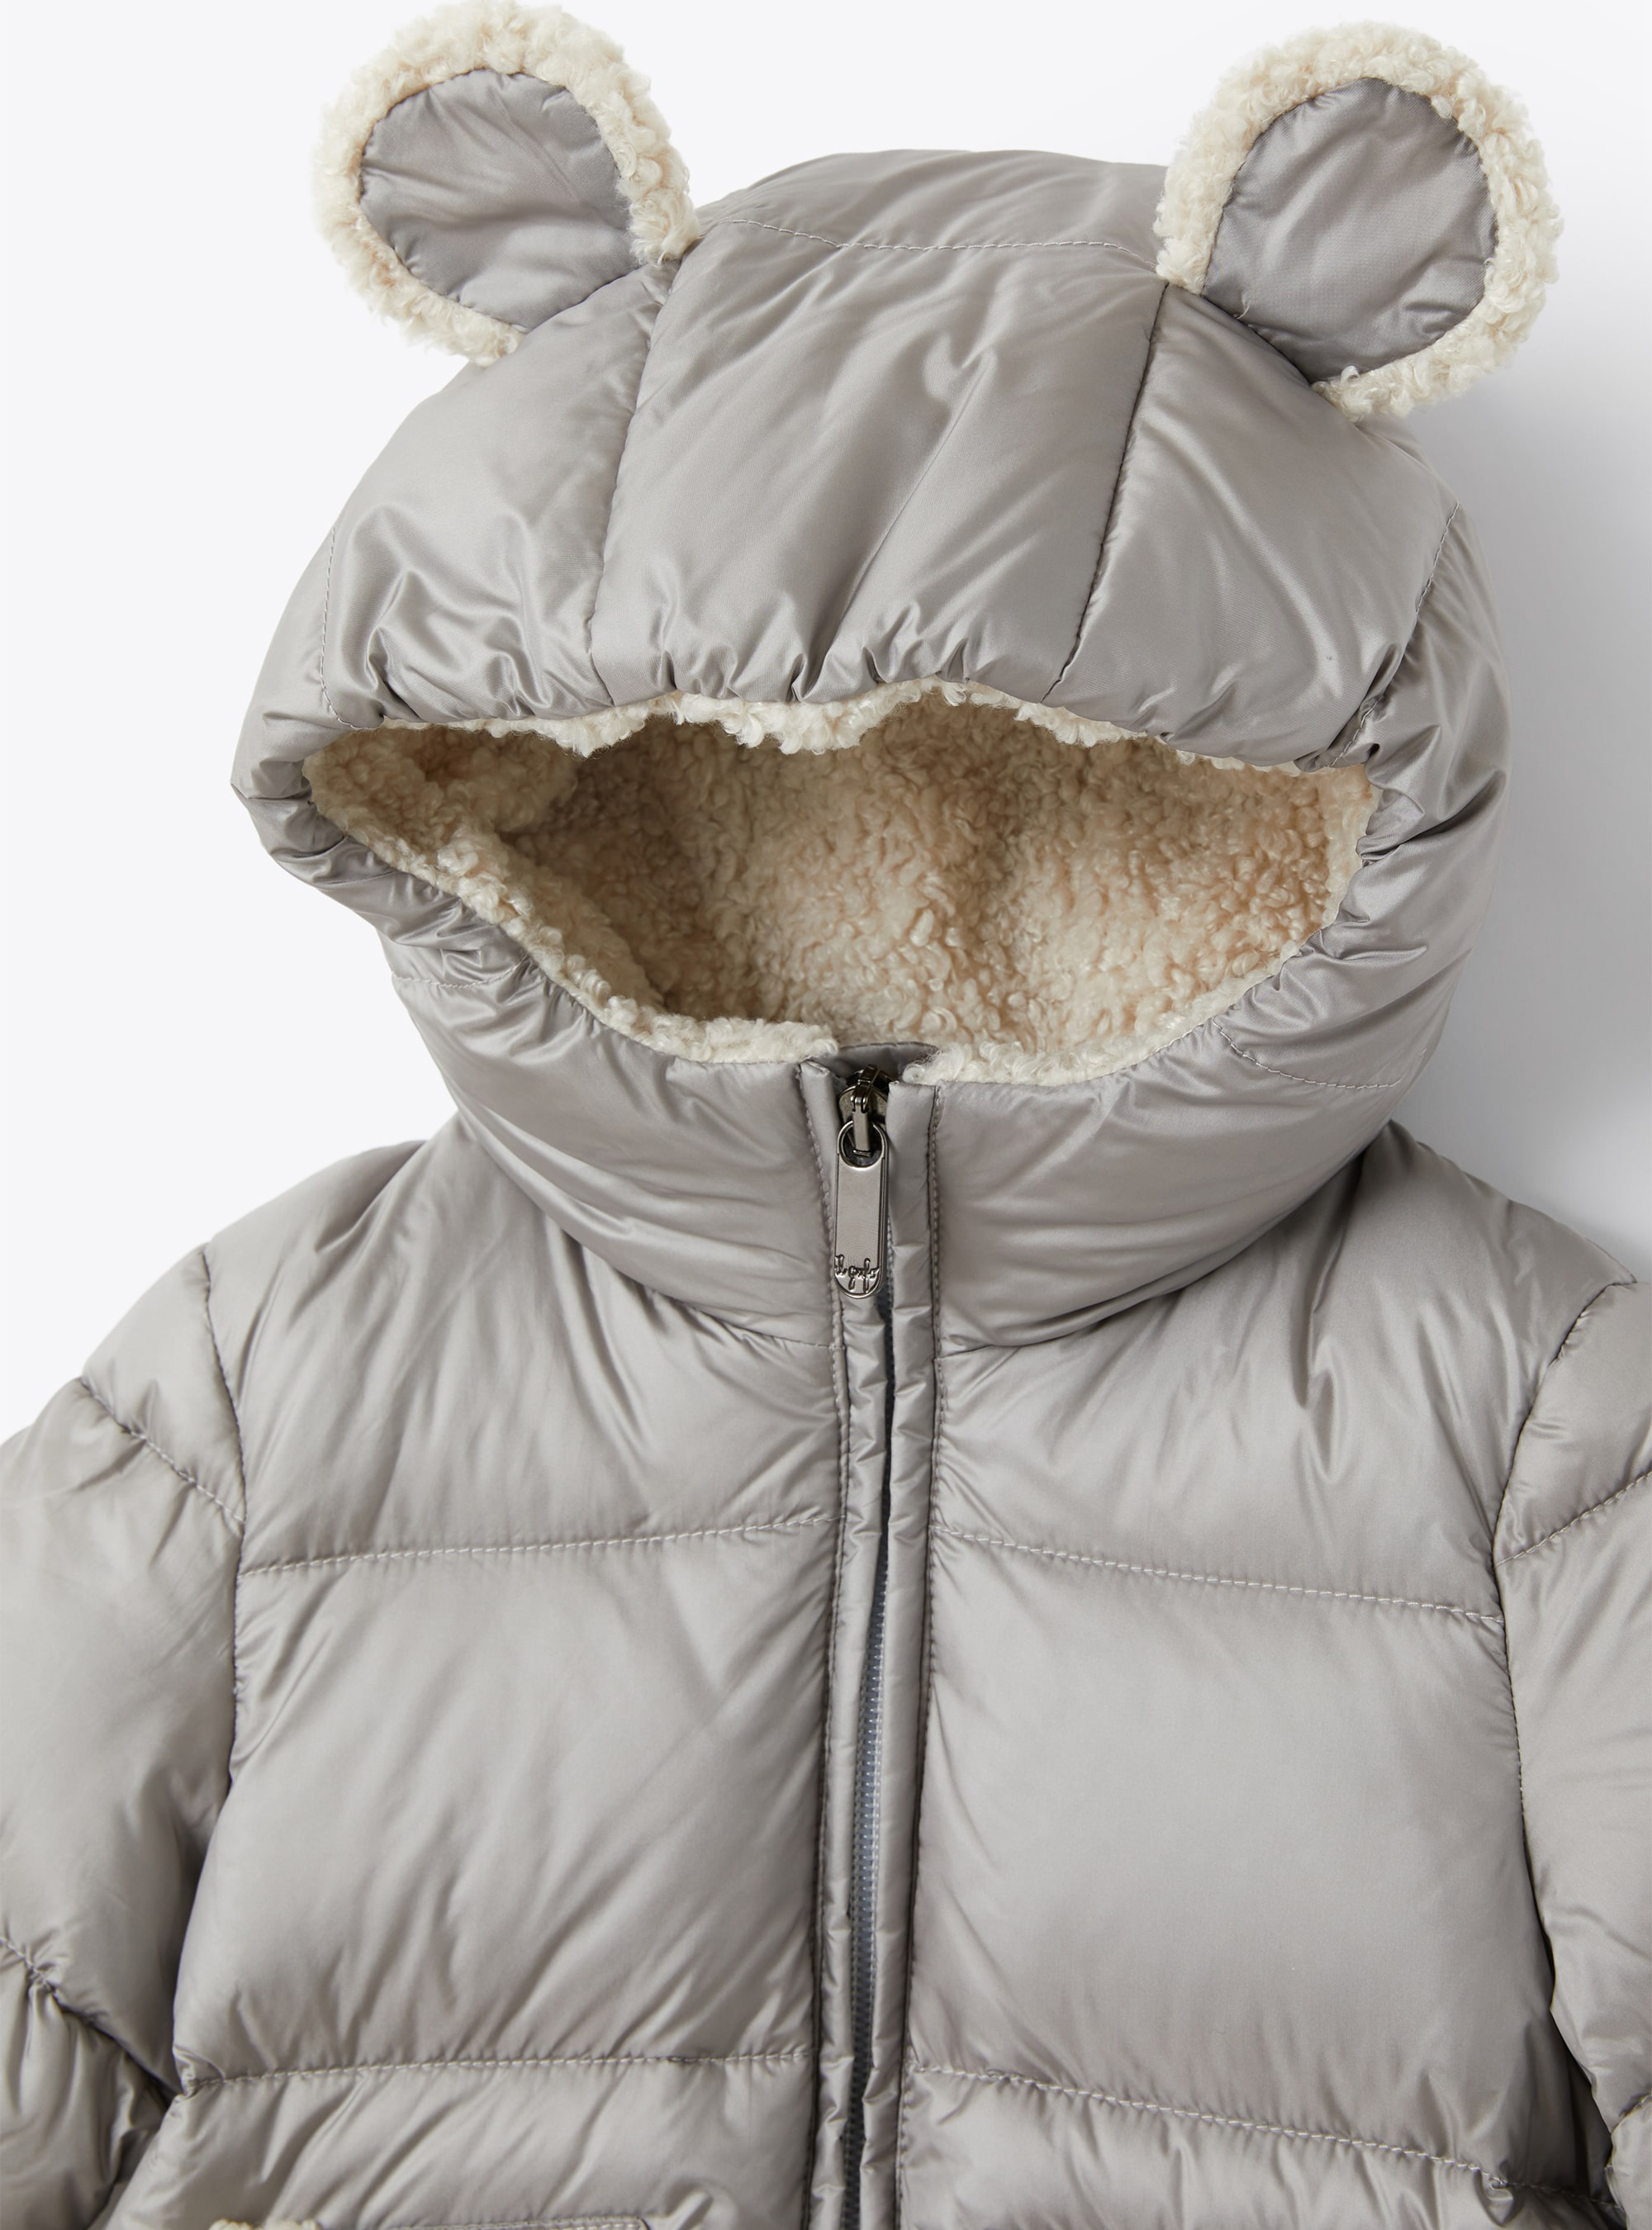 Down jacket with teddy fleece details - Grey | Il Gufo